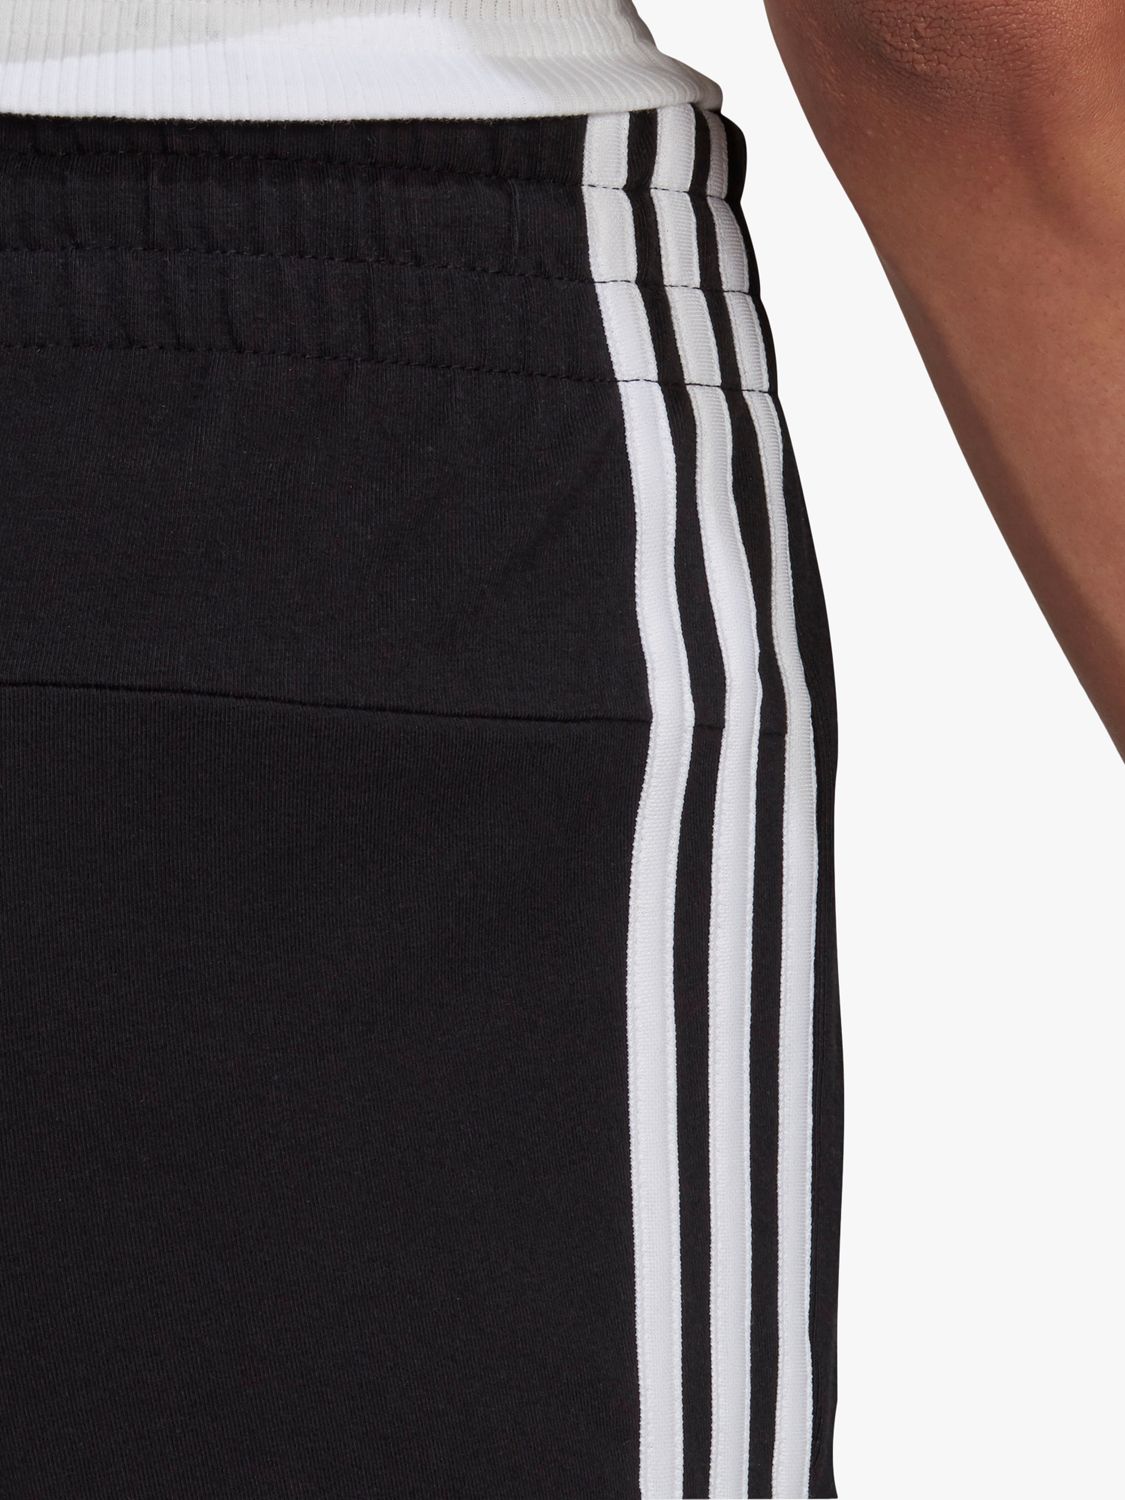 adidas Essentials Slim 3-Stripes Gym Shorts, Black/White, Black/White ...